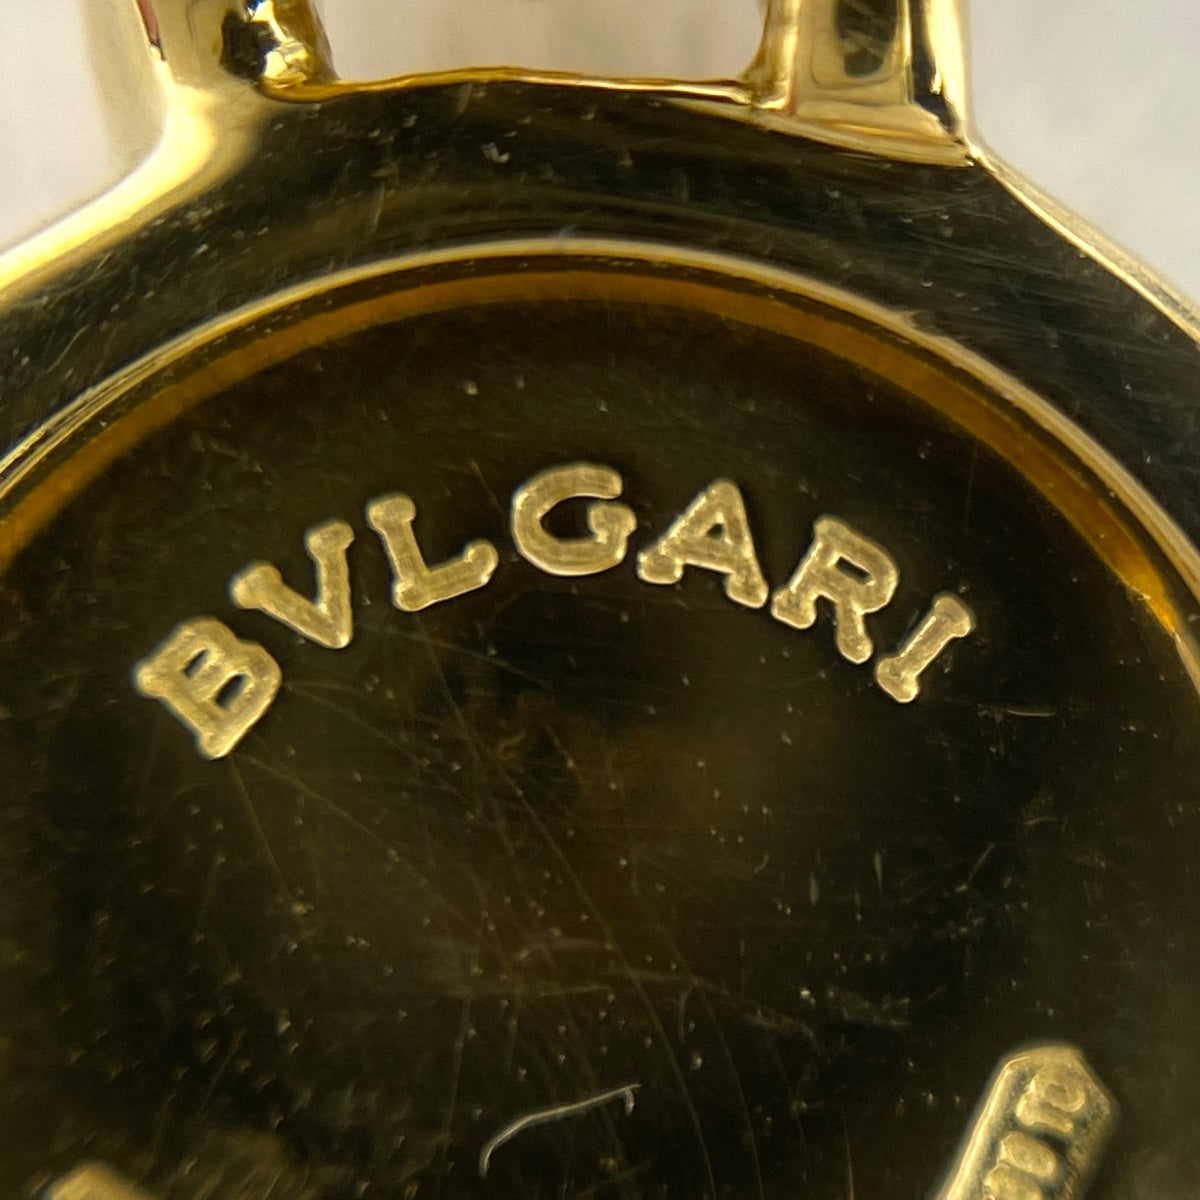 BVLGARI ブルガリ BVLGARI ブルガリブルガリ イヤリング YG イエローゴールド イヤリング 750 レディース